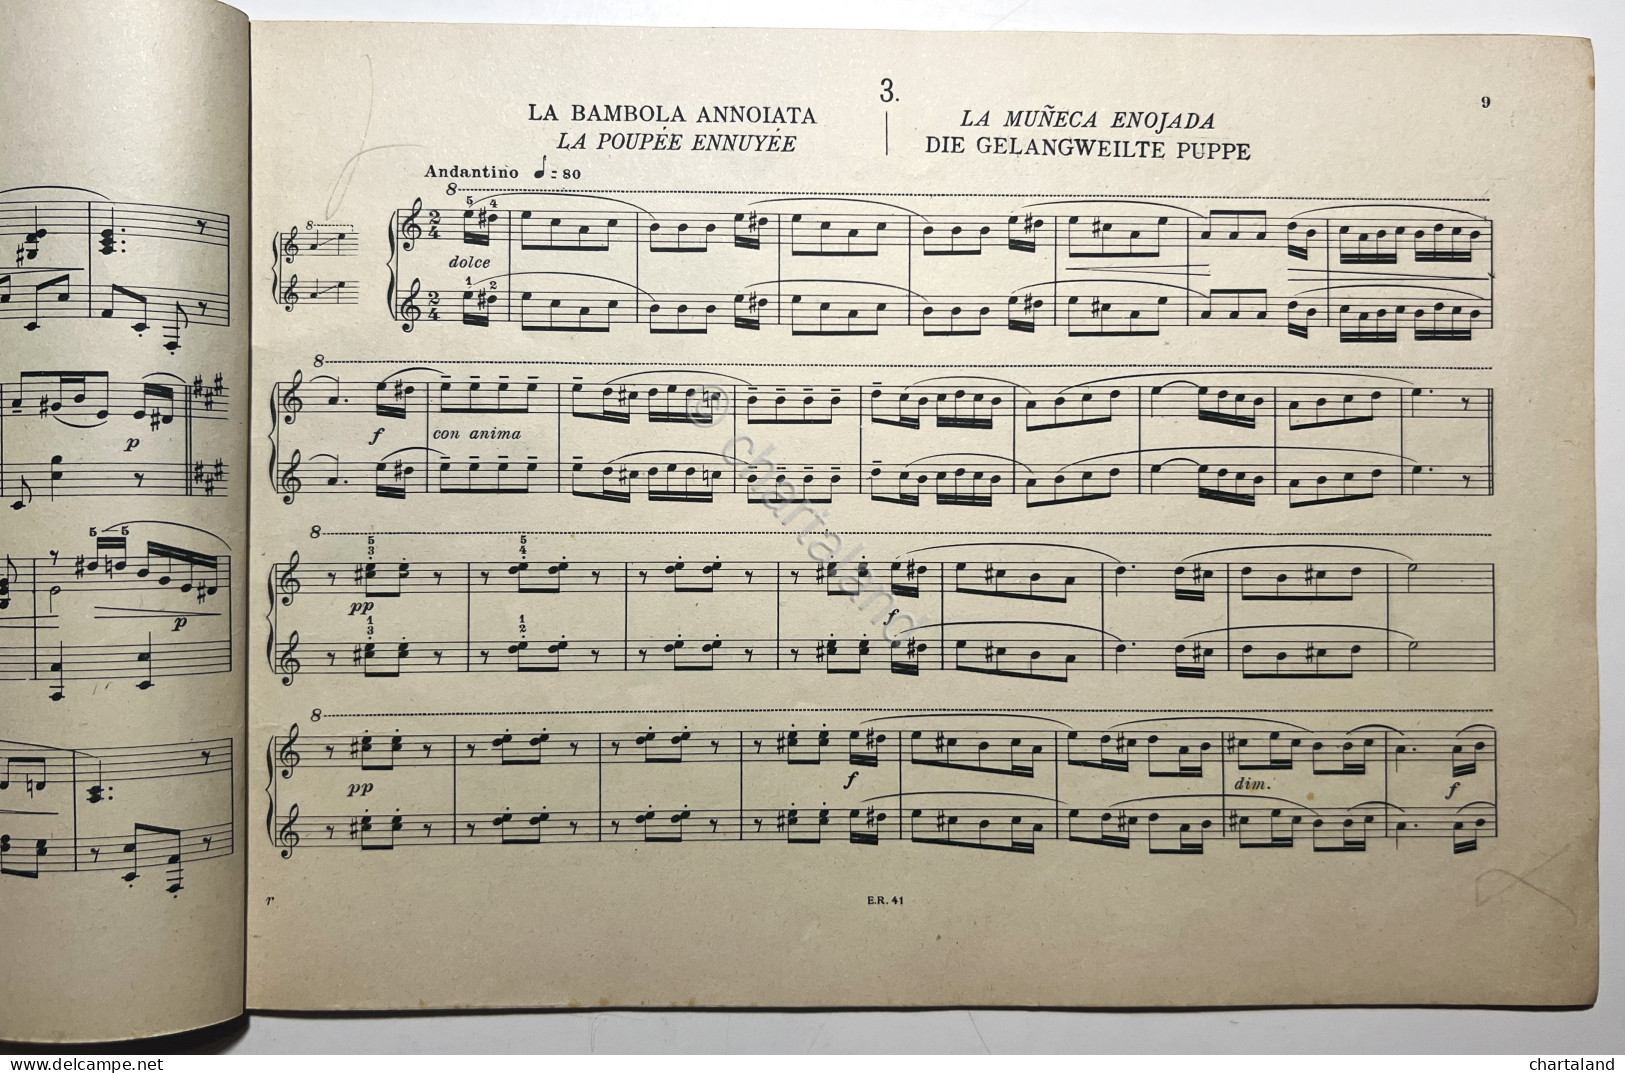 Spartiti - G. Galluzzi - Ricreazioni Pianistiche Per Piano A 4 Mani - Ed. 1944 - Ohne Zuordnung